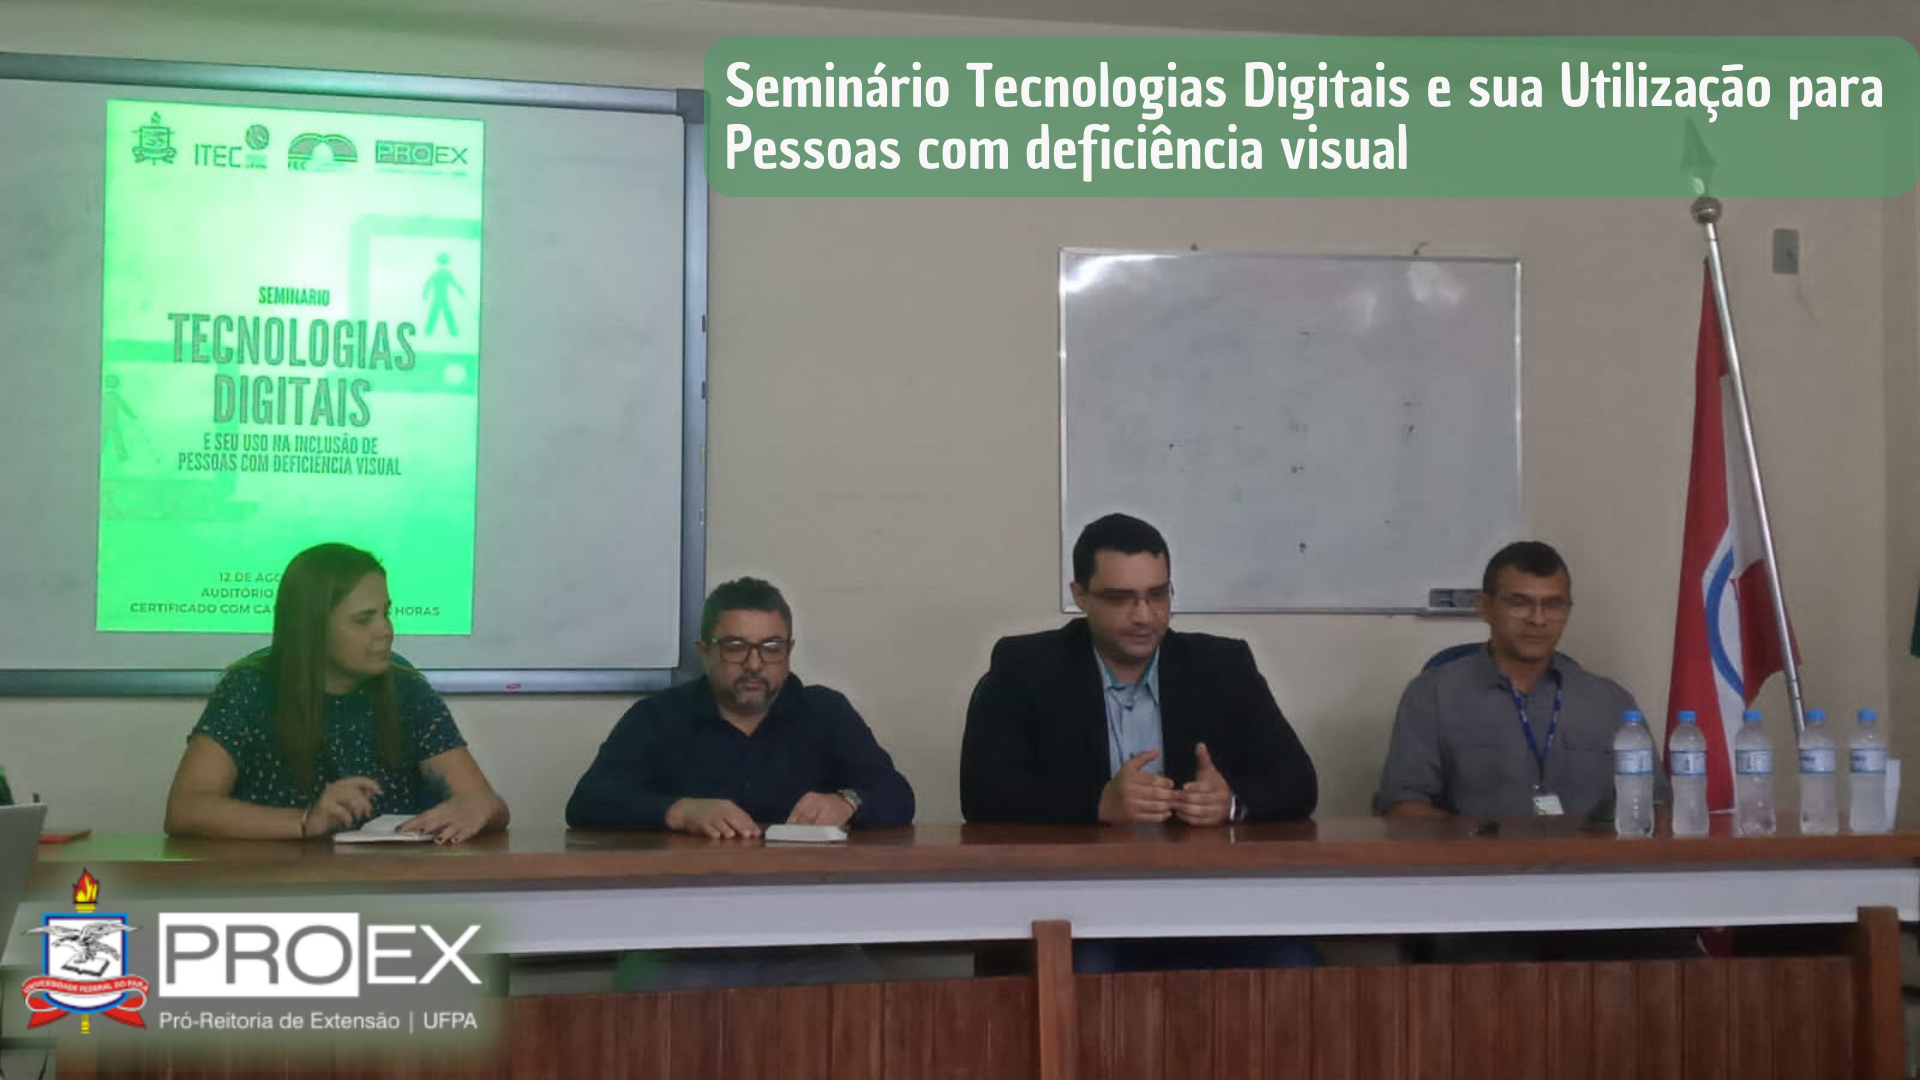 Seminário Tecnologias Digitais e sua Utilização para Pessoas com deficiência visual.